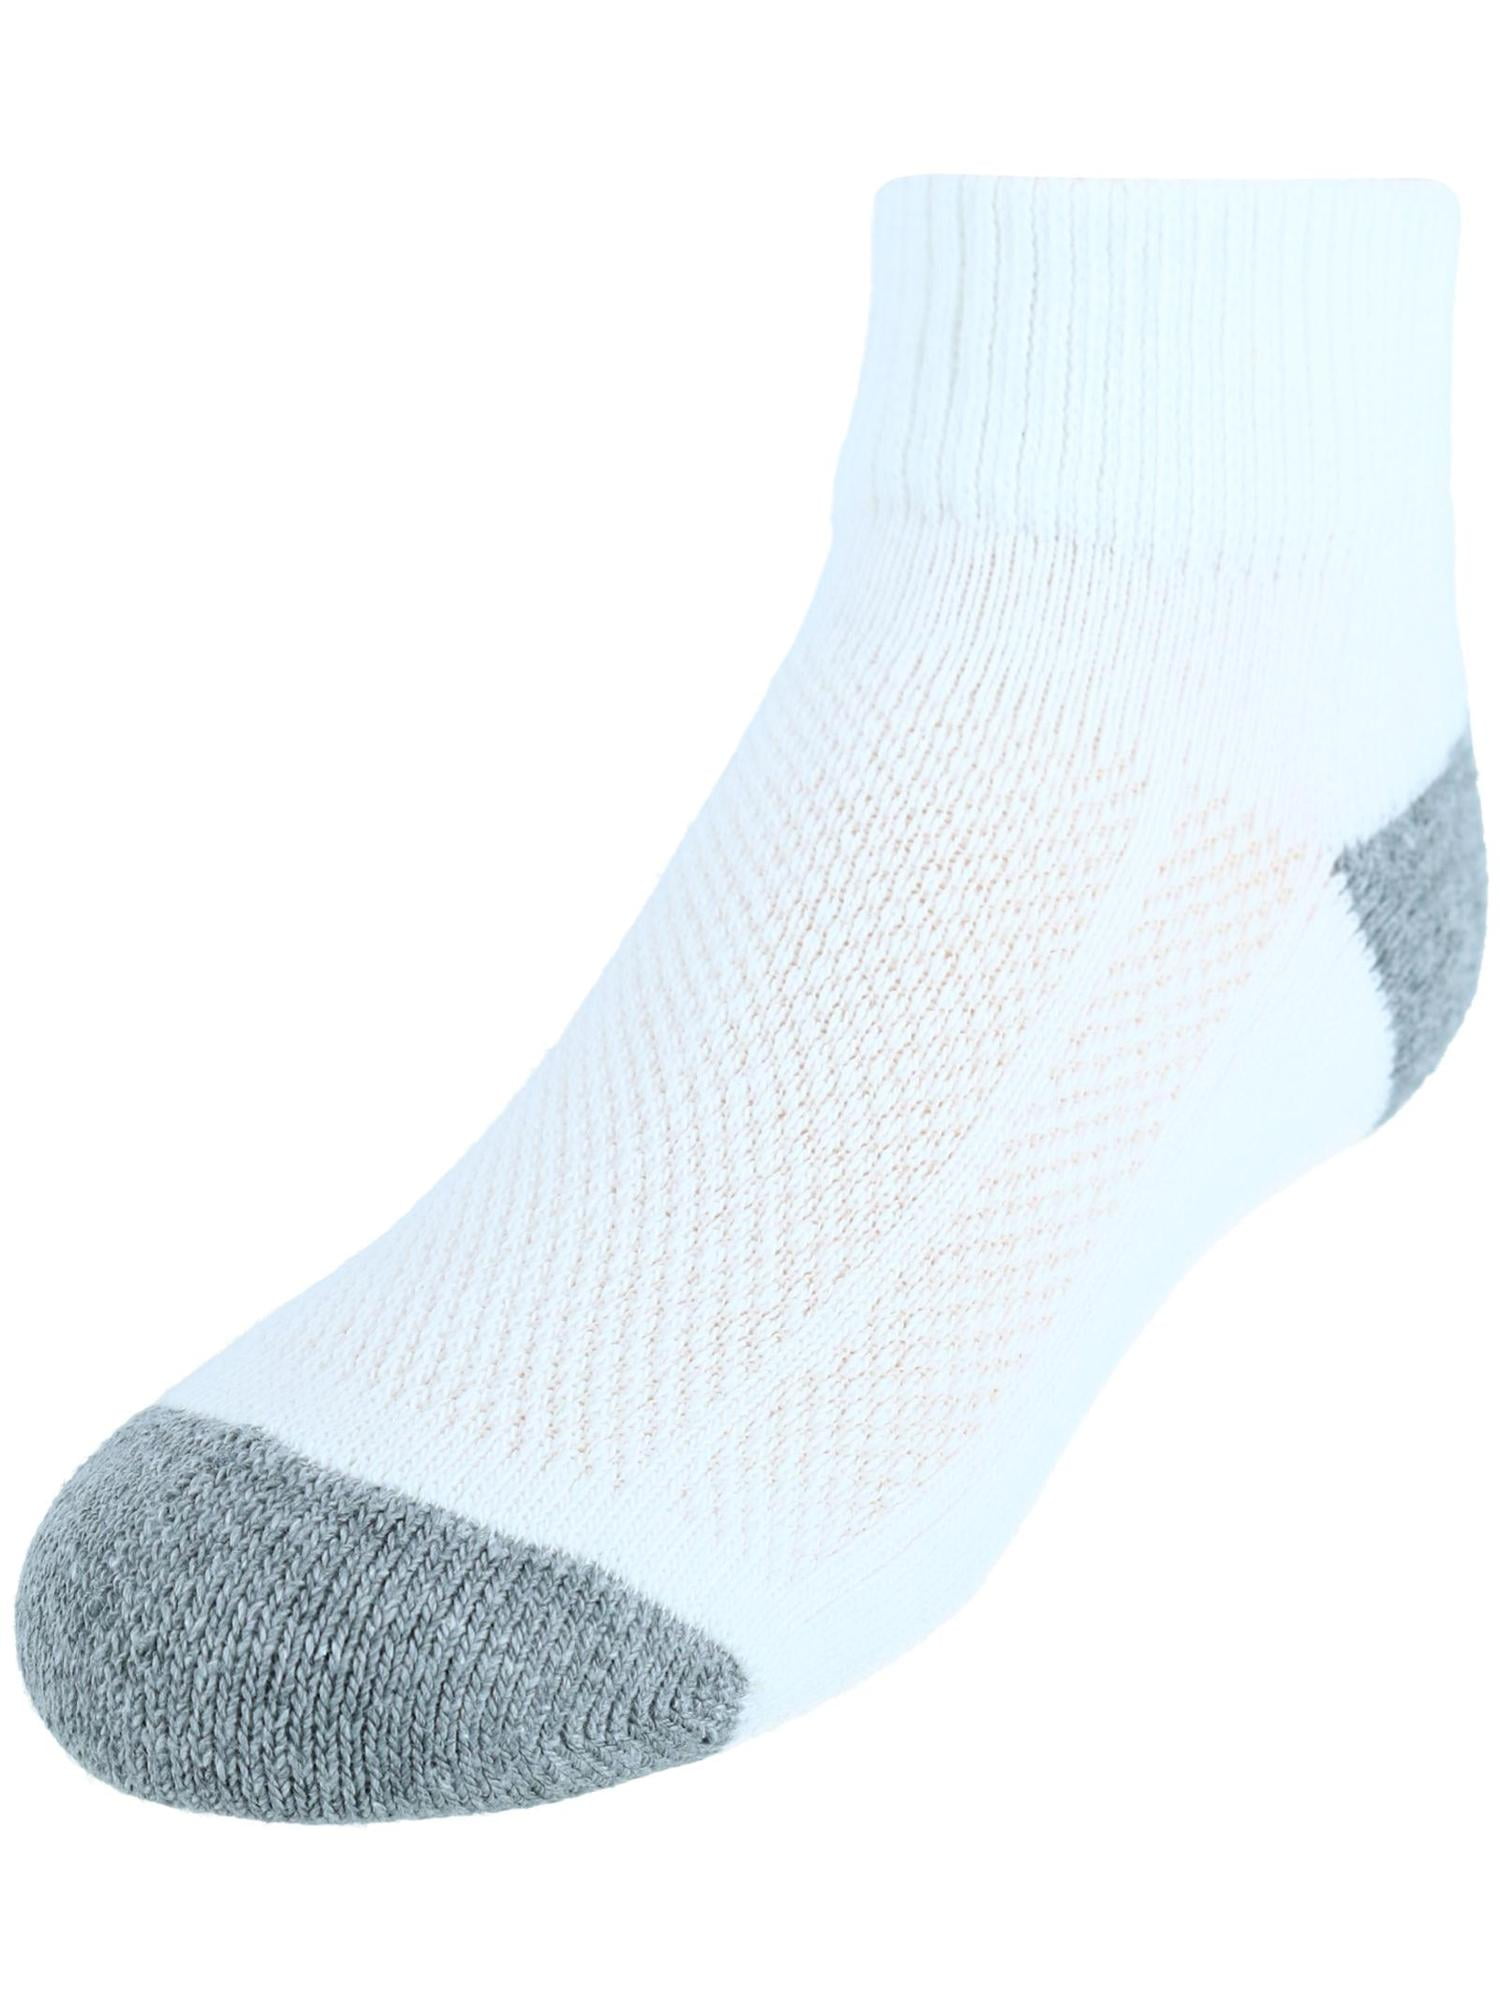 1 Dozen/ 12 Pairs Ankle/Quarter Crew Mens Socks Cotton low cut Size 10-13 